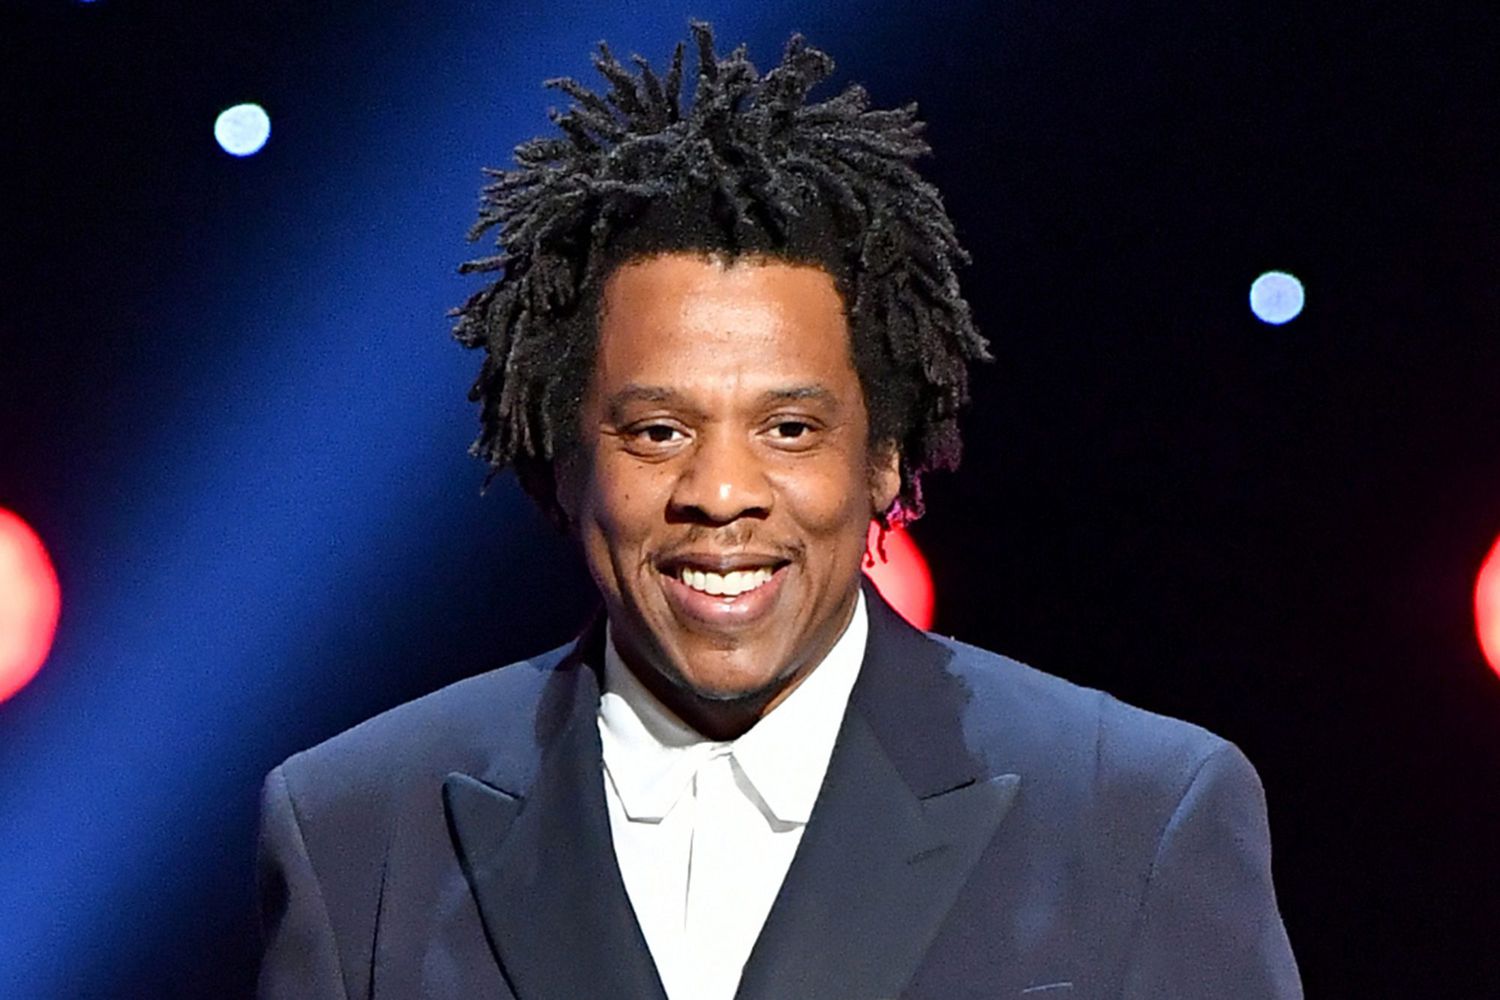 Jay-Z wearing a blue suit